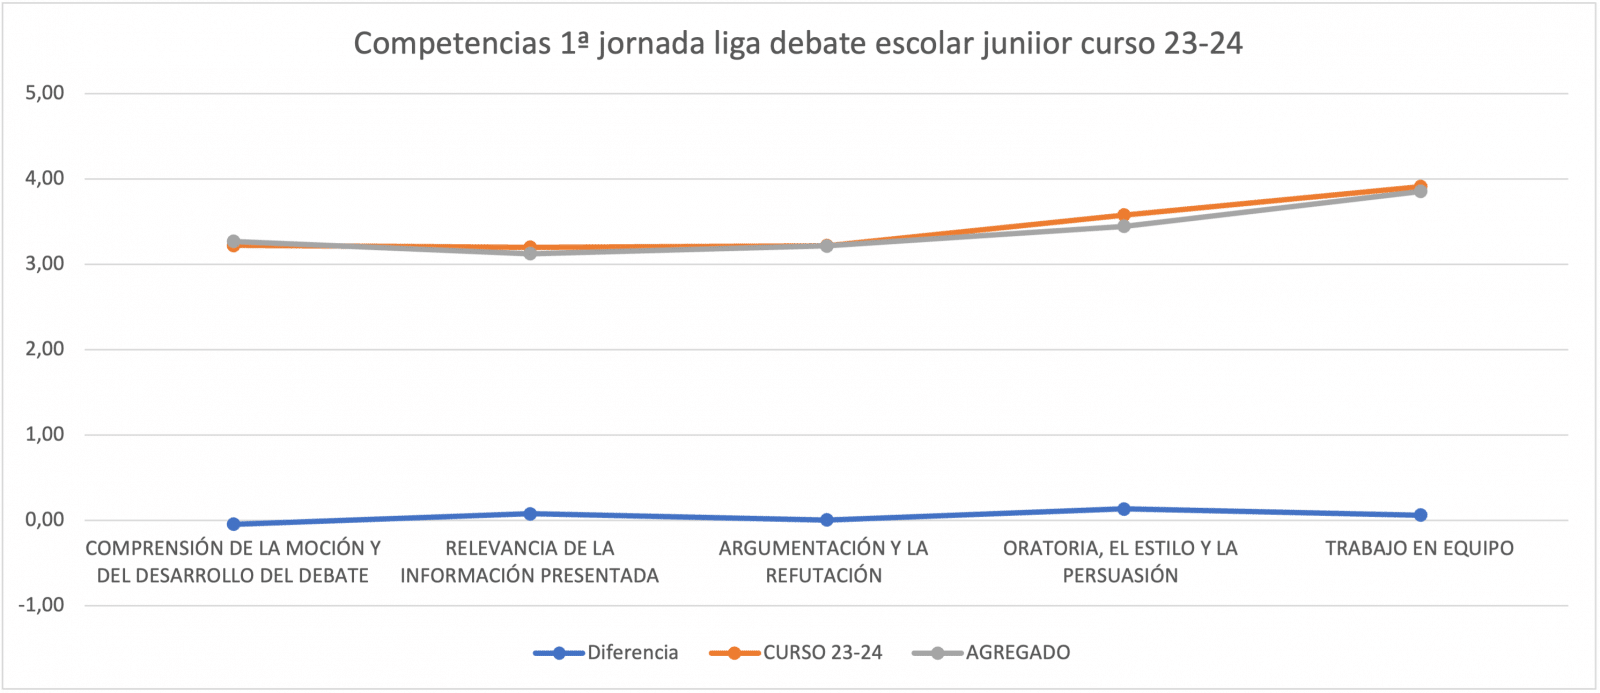 Evolución competencias tras la 1ª jornada de la liga de debate escolar junior curso 23-24